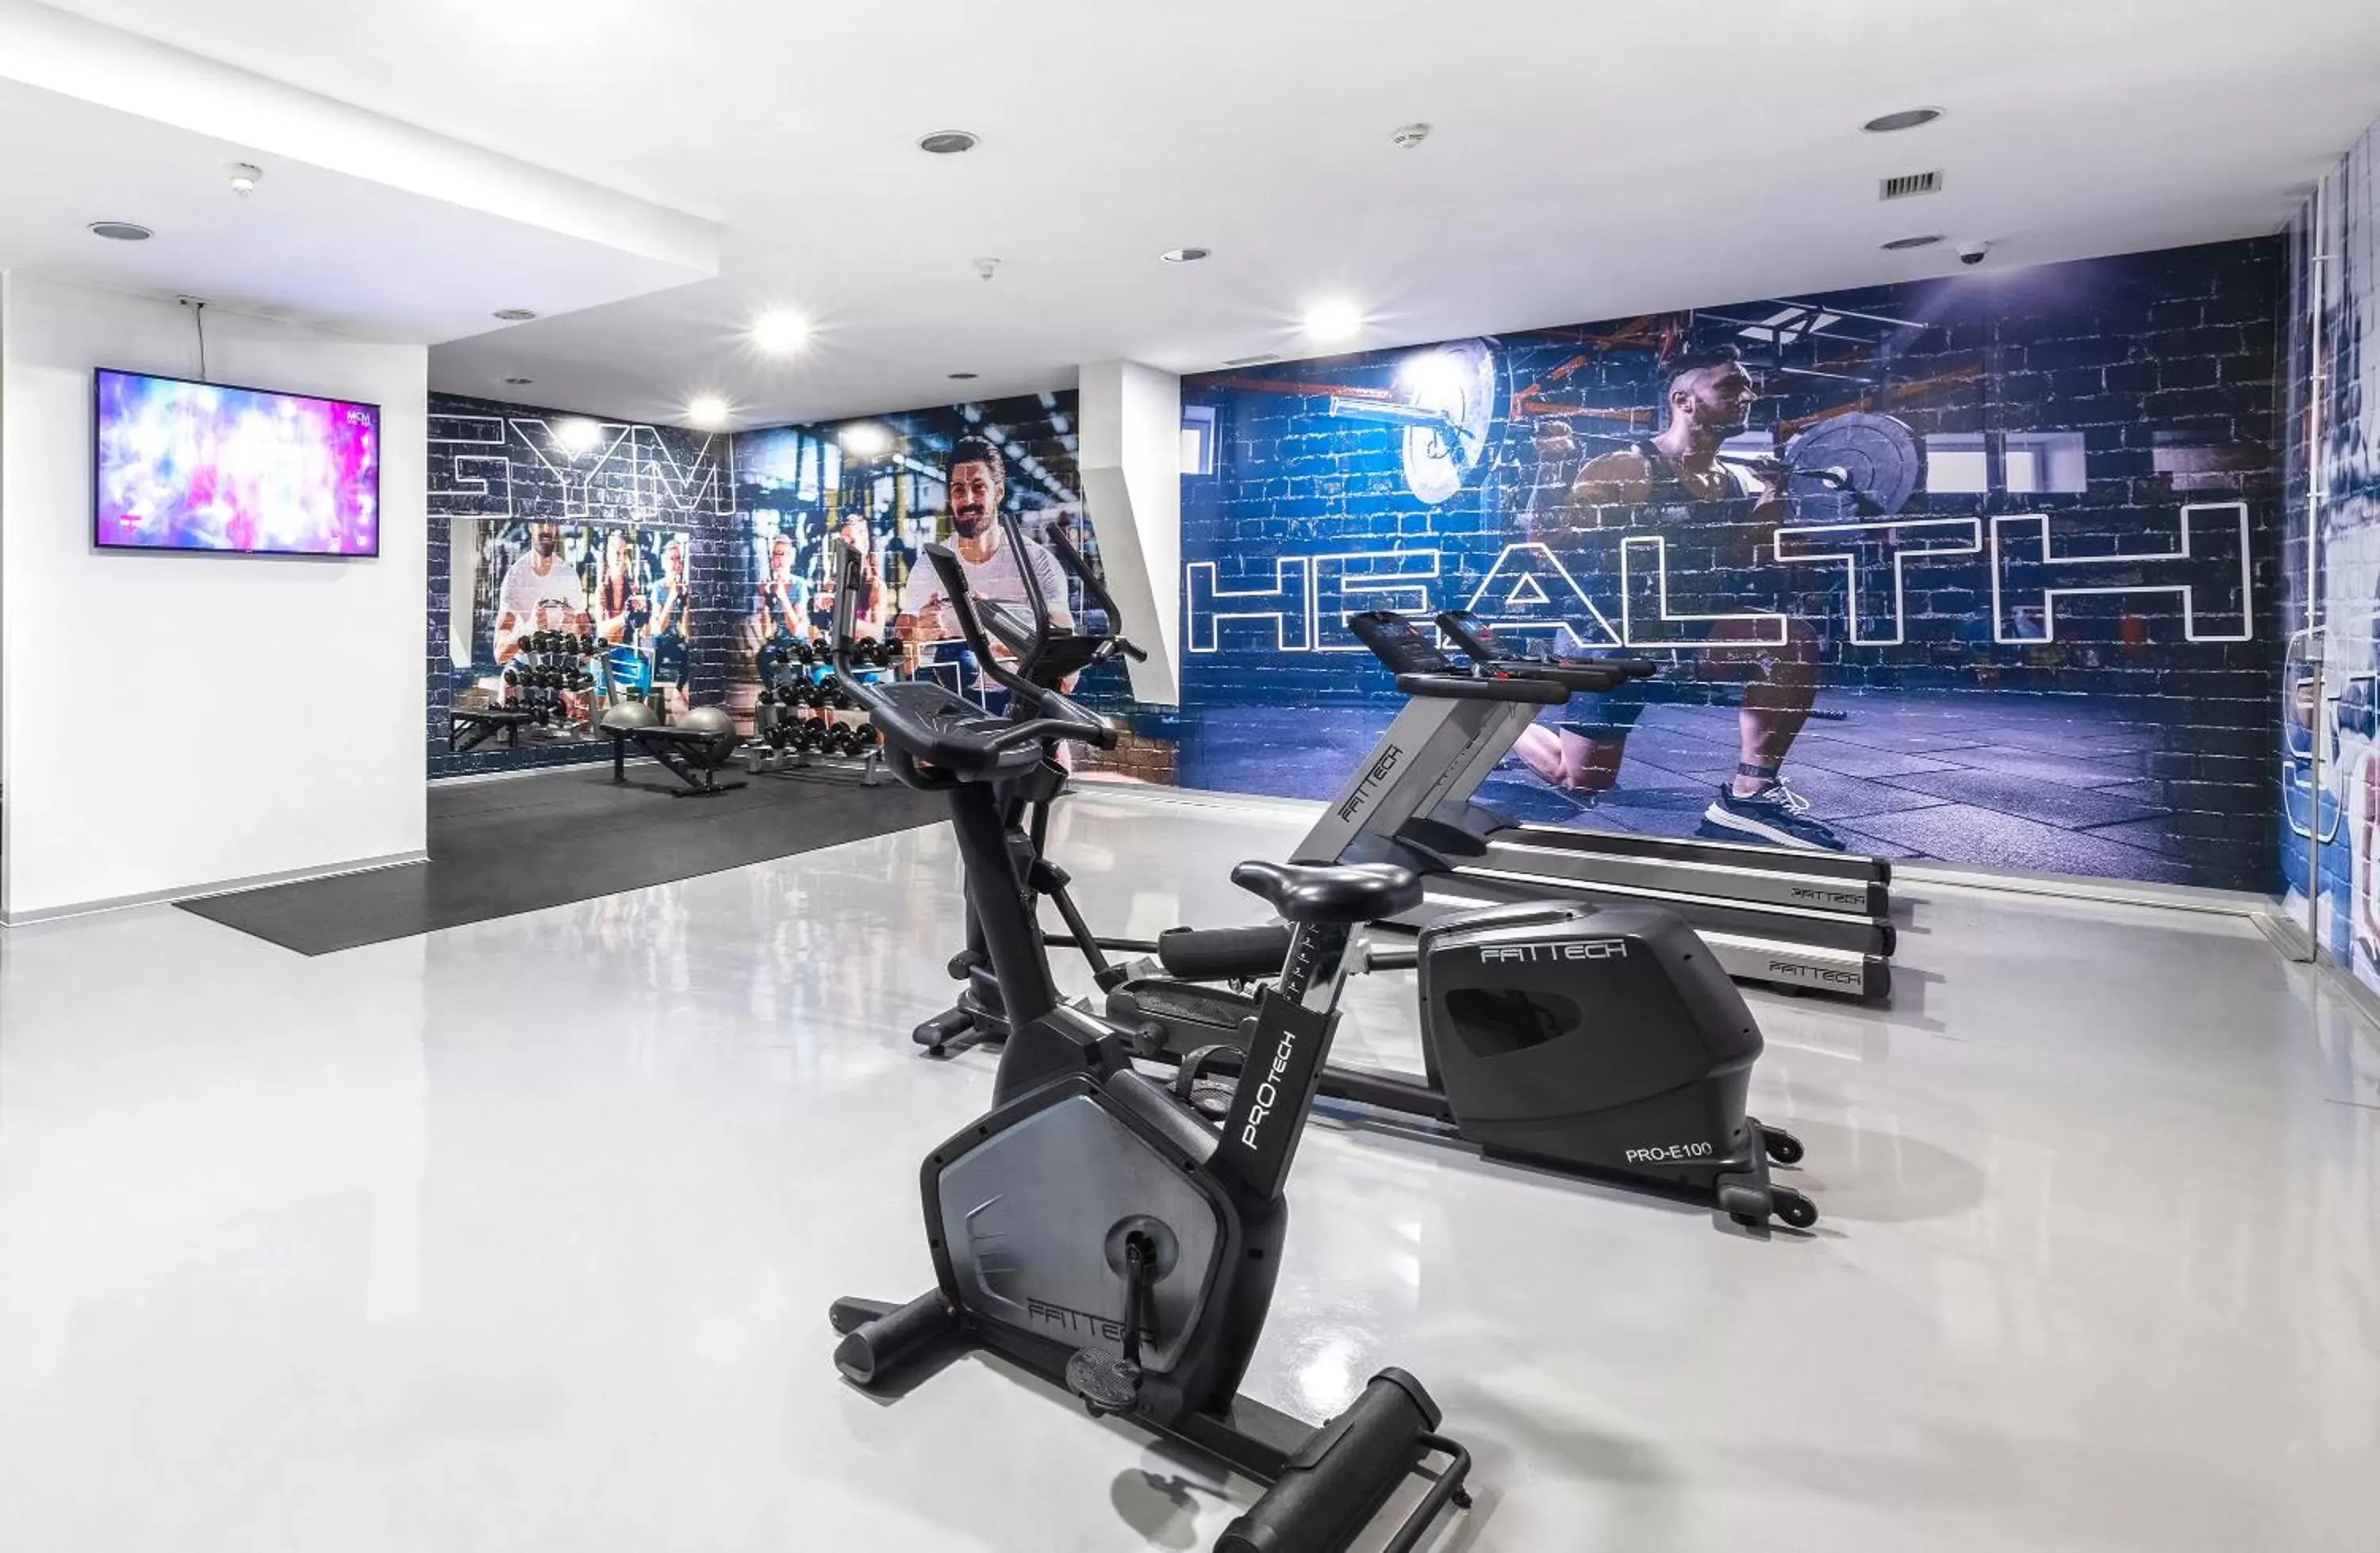 Fitness centre/facilities, Fitness Center/Facilities in RR Hotel da Rocha